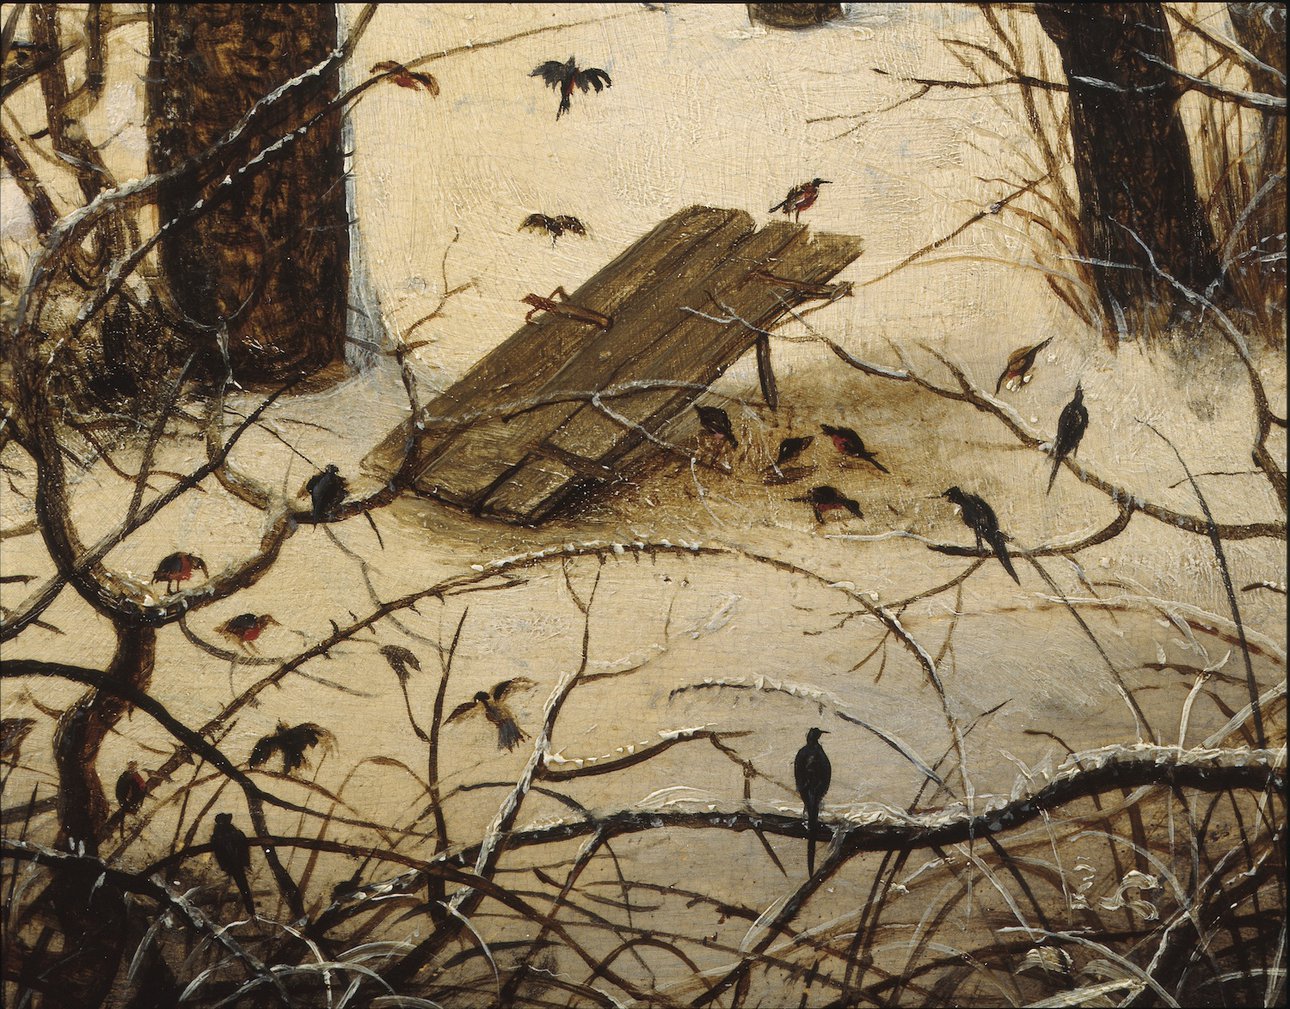 Питер Брейгель Старший. «Зимний пейзаж с ловушкой для птиц». Фрагмент. Королевские музеи изящных искусств Бельгии, Брюссель. Фото: KIK-IRPA, Brussel